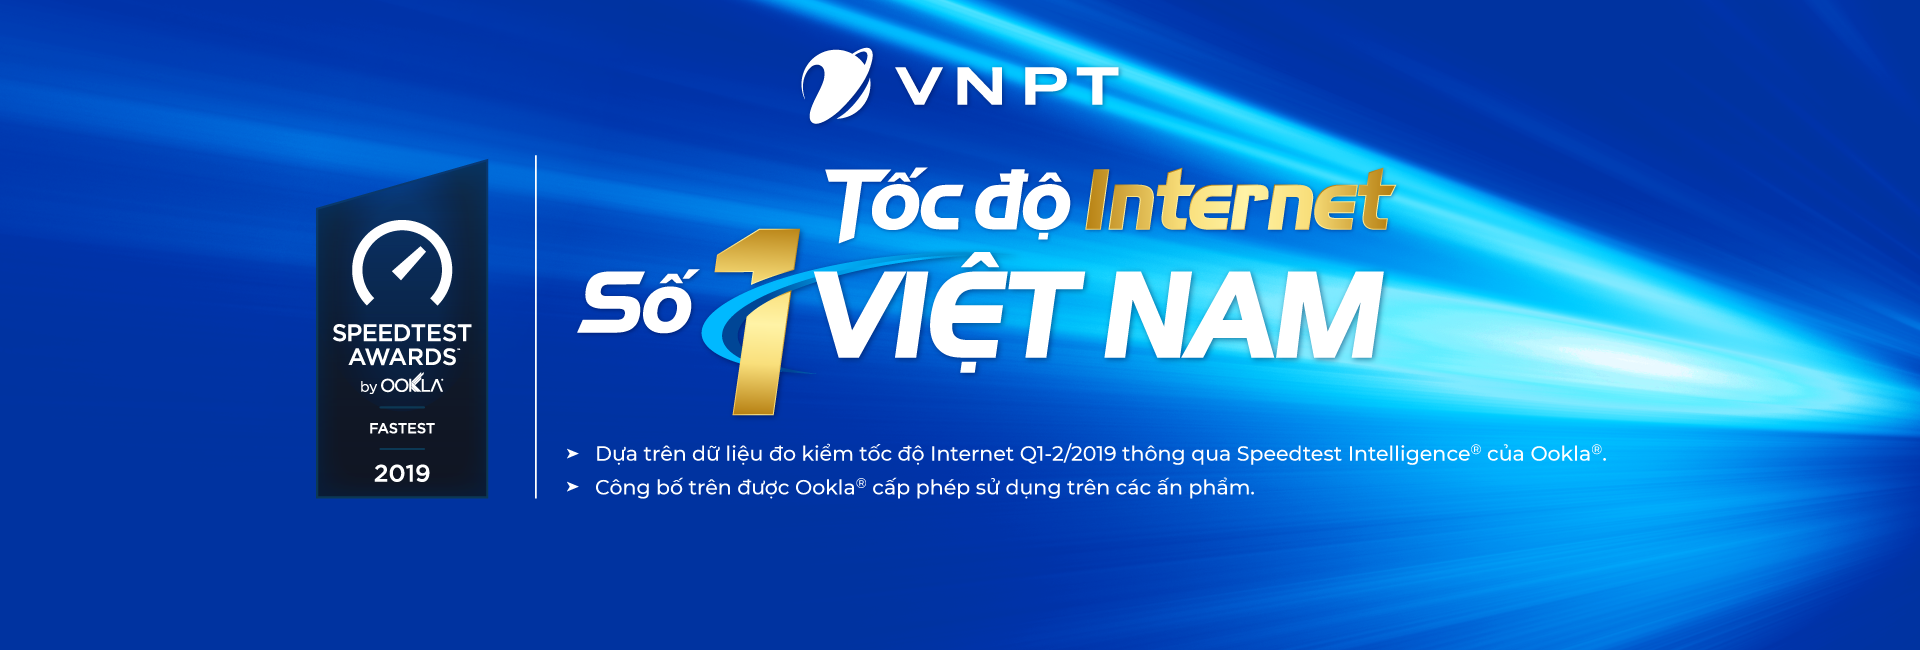 Lắp mạng Internet VNPT dành cho Doanh nghiệp Chỉ từ 147.840